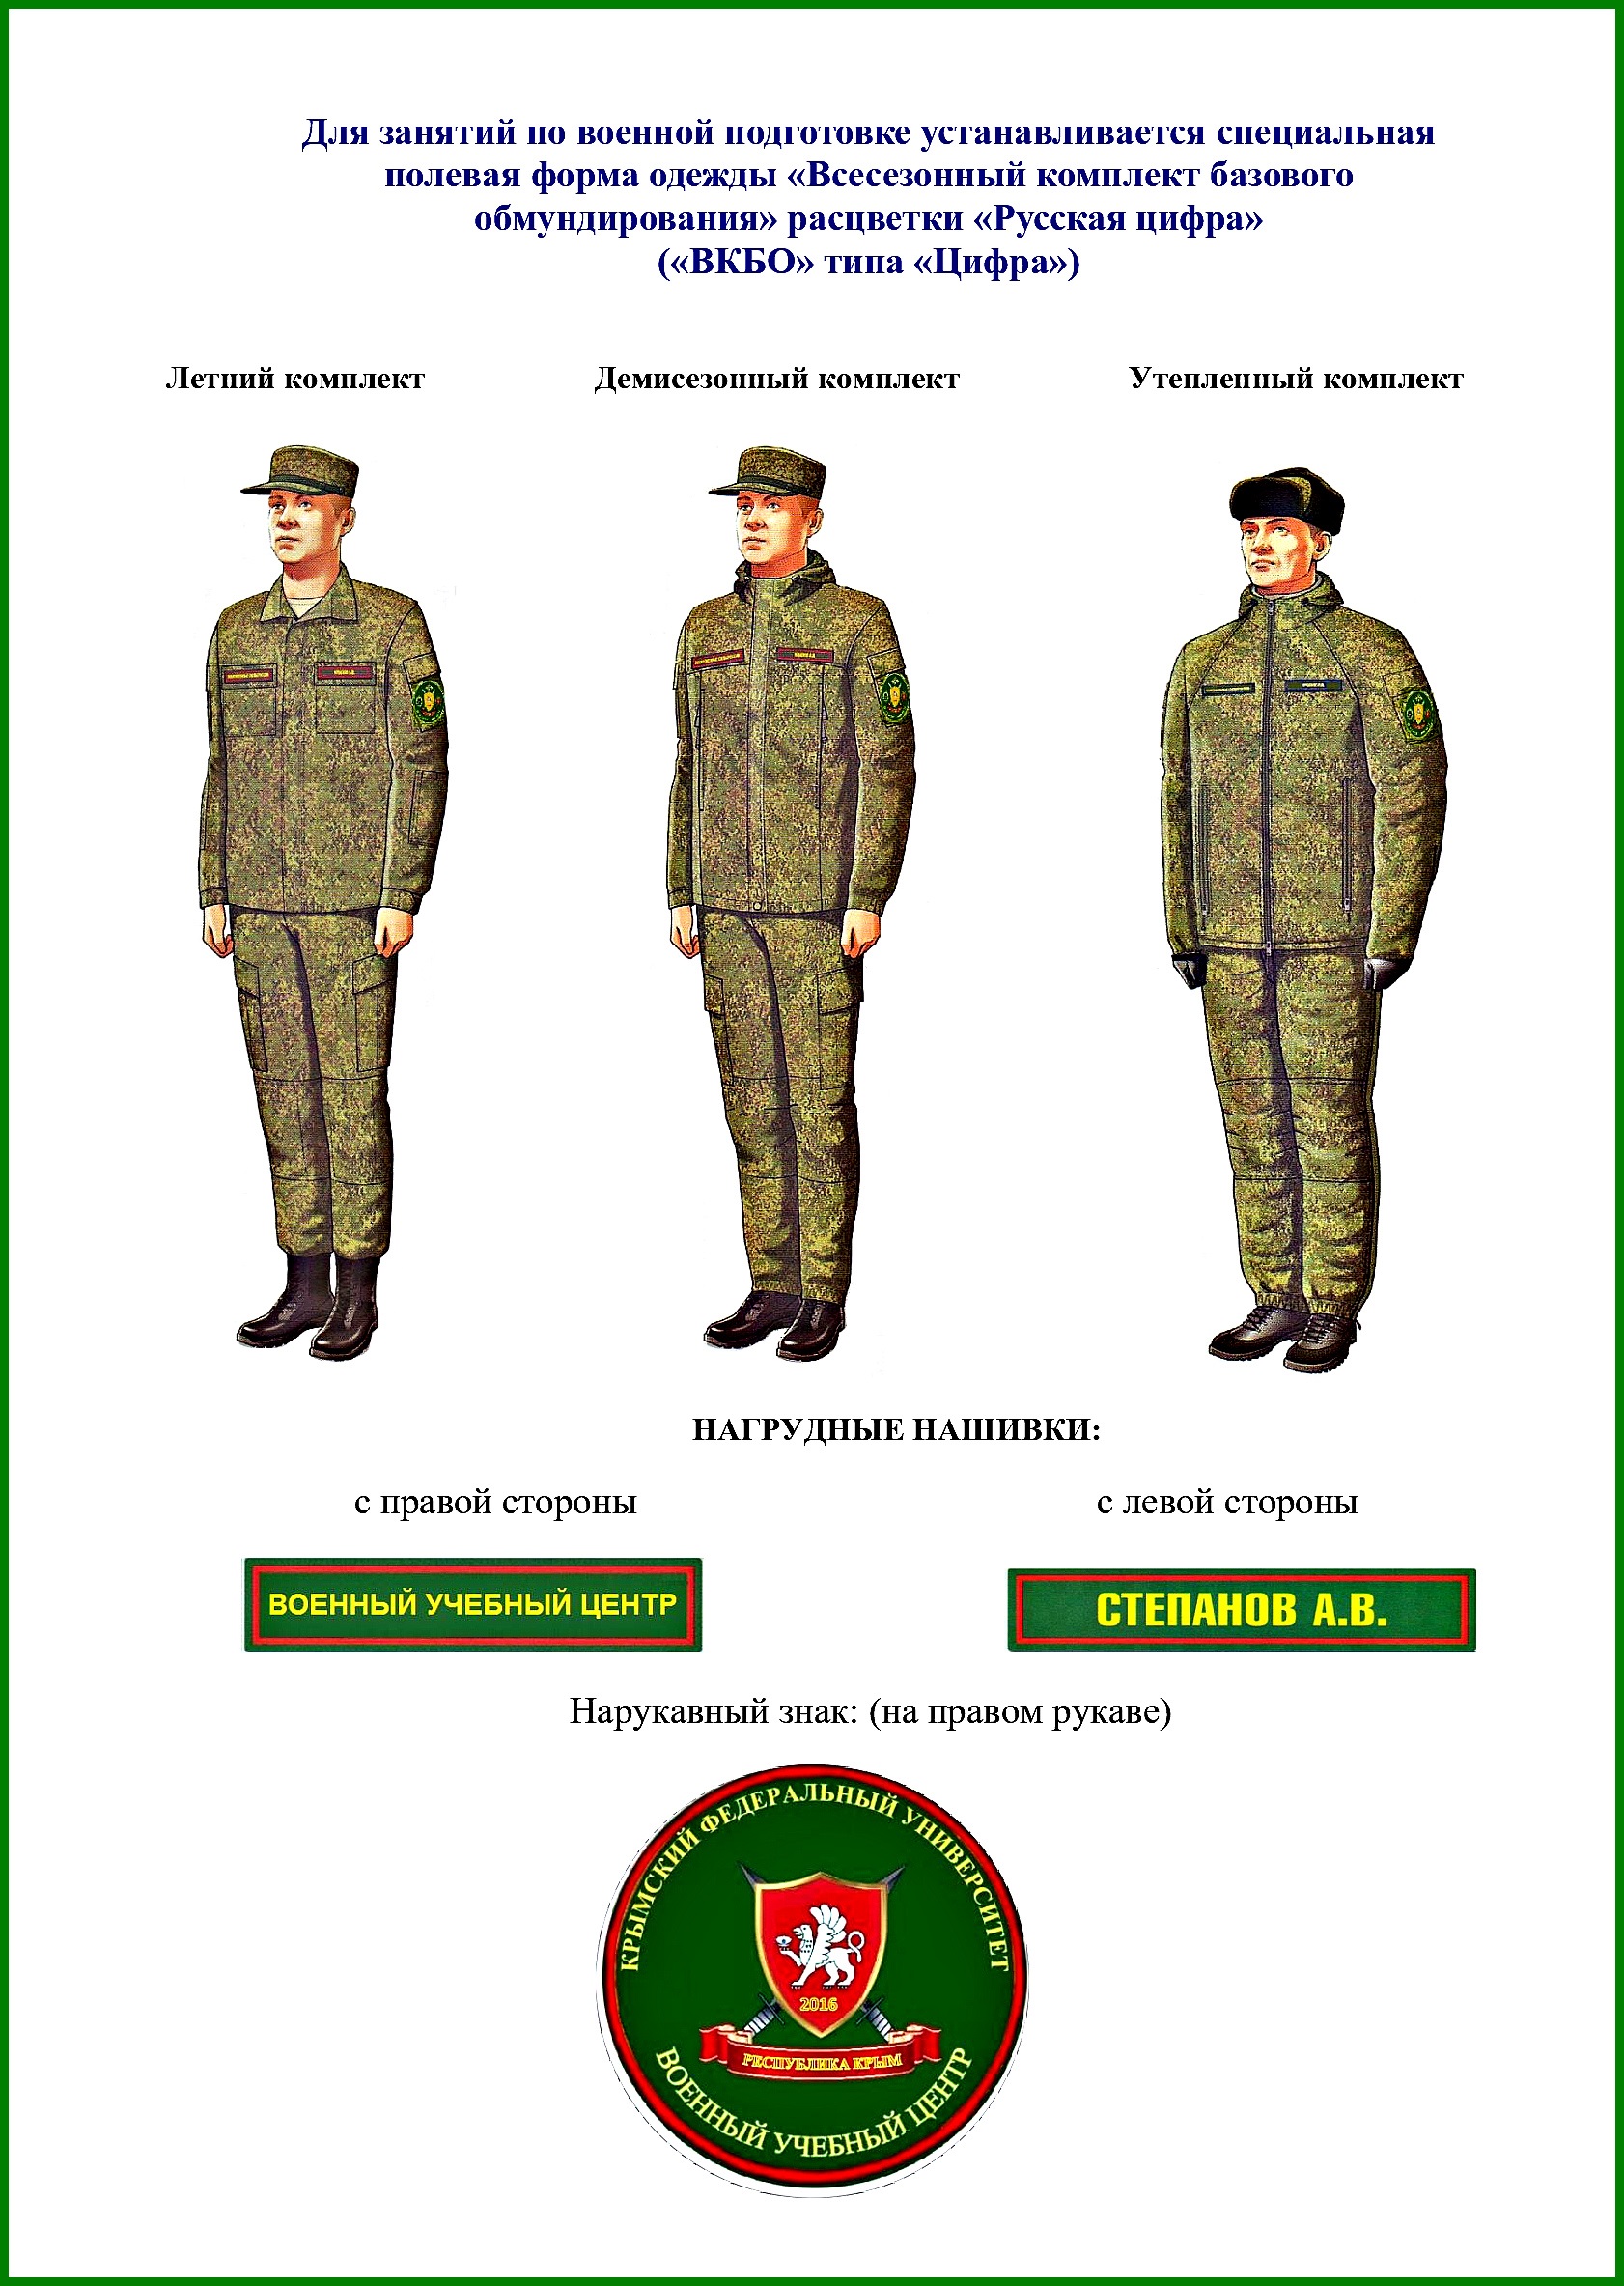 Форма одежды 4 для военнослужащих